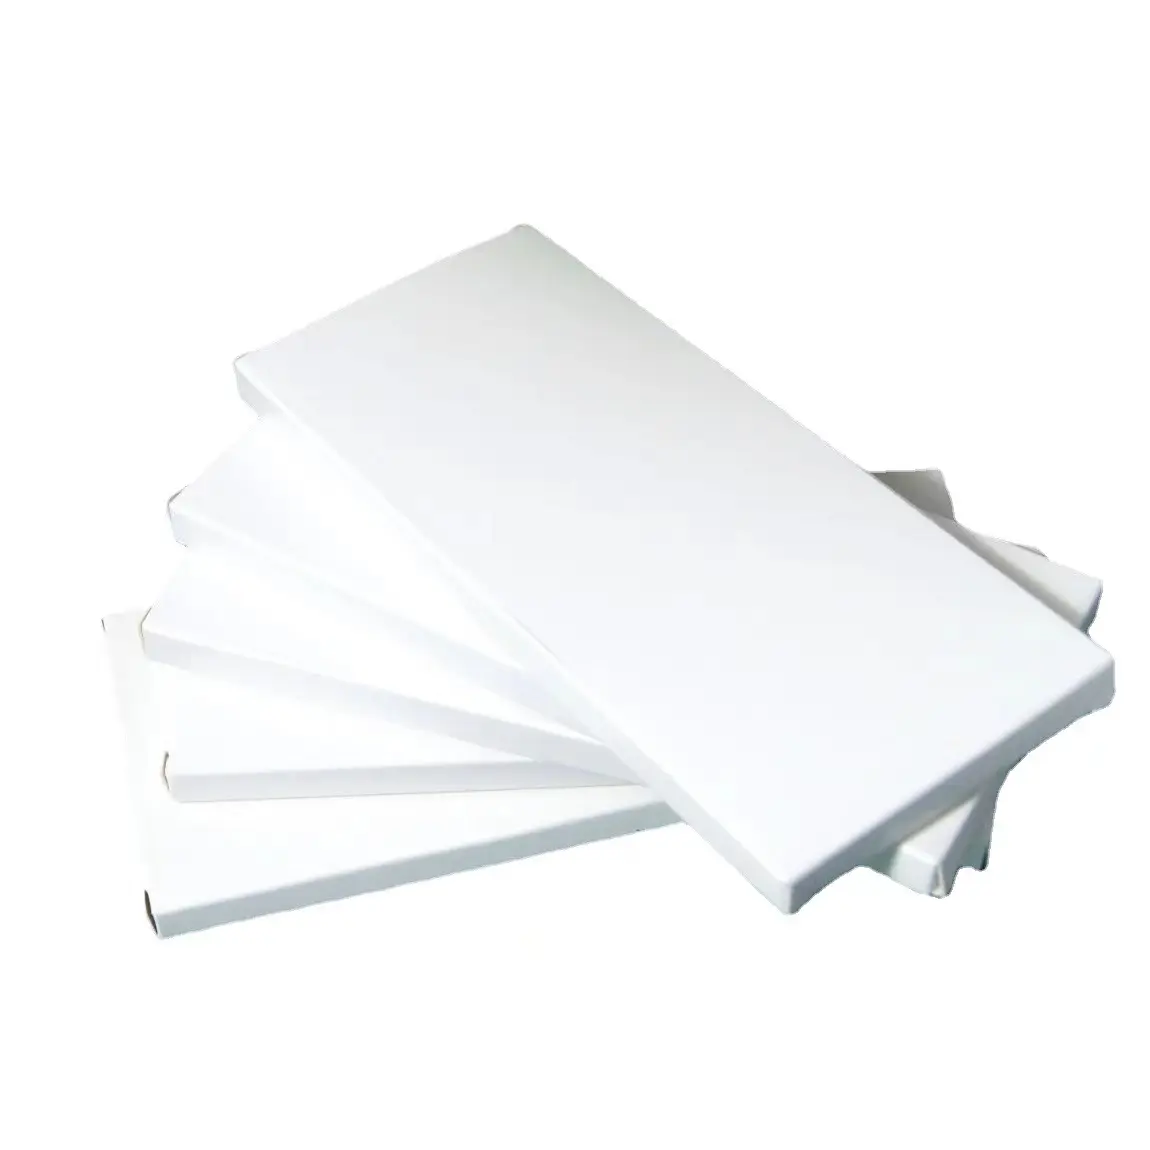 Kotak kartu putih polos MULTI ukuran siap untuk dikirim kotak putih kecil perhiasan kotak kartu putih